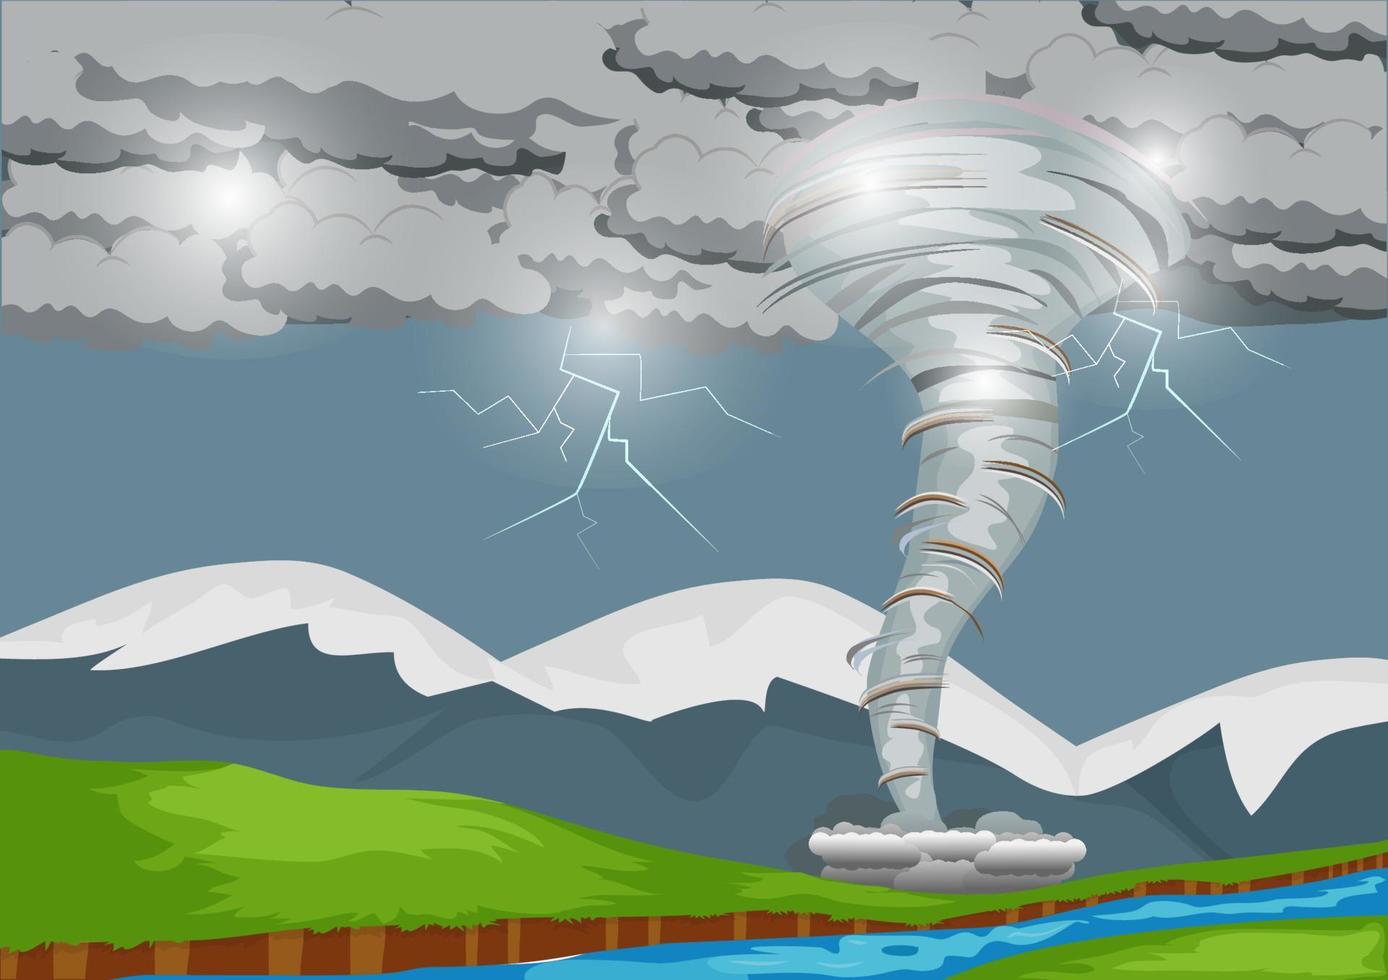 une forte tempête produit une puissante tornade qui balaie la campagne avec des éclairs. illustration de paysage de médias mixtes vecteur